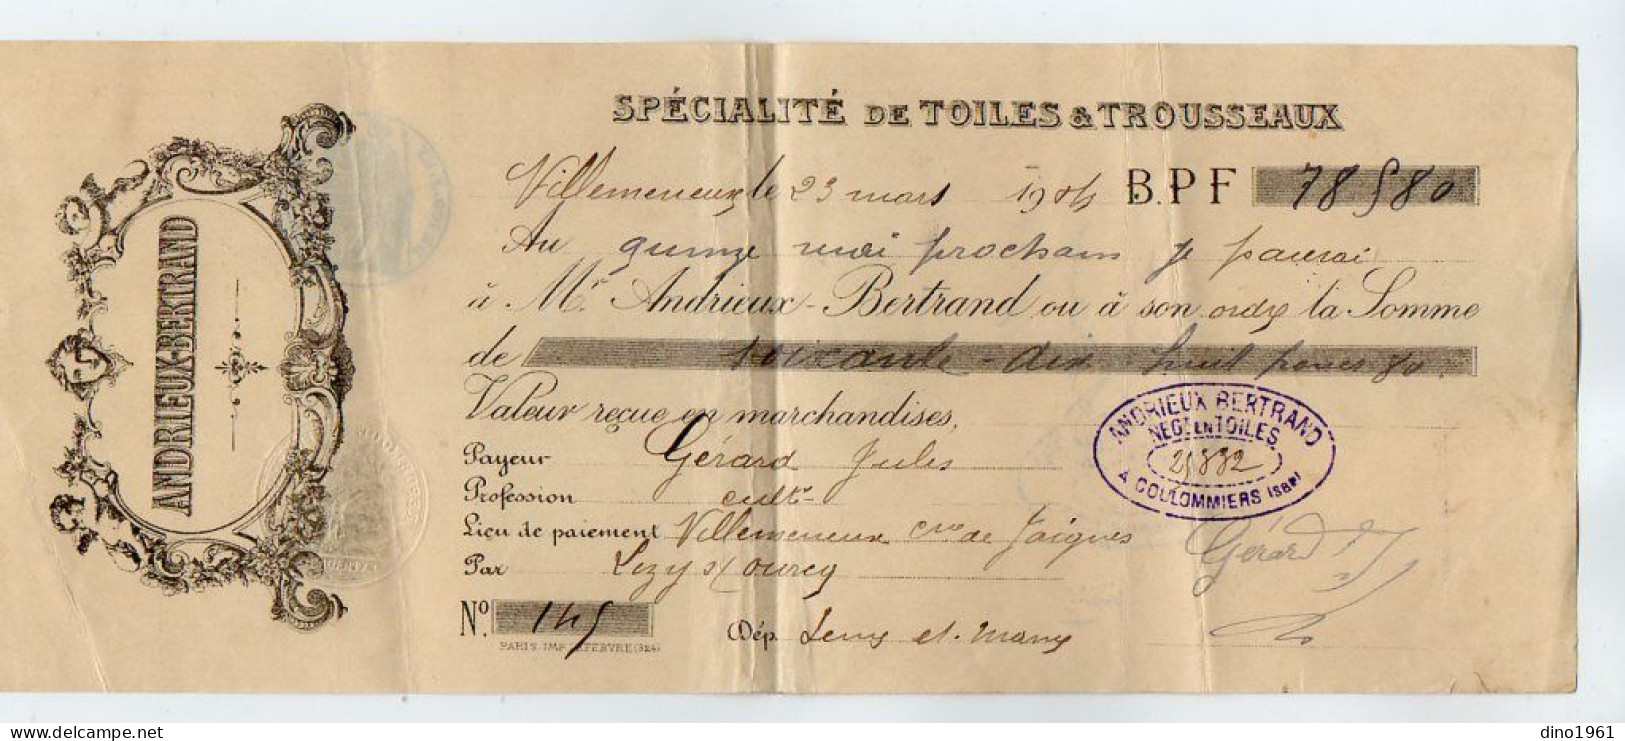 VP22.589 - Lettre De Change - 1914 - Spécialité De Toiles & Trousseaux - ANDRIEUX - BERTRAND à JAIGNES & COULOMMIERS - Letras De Cambio